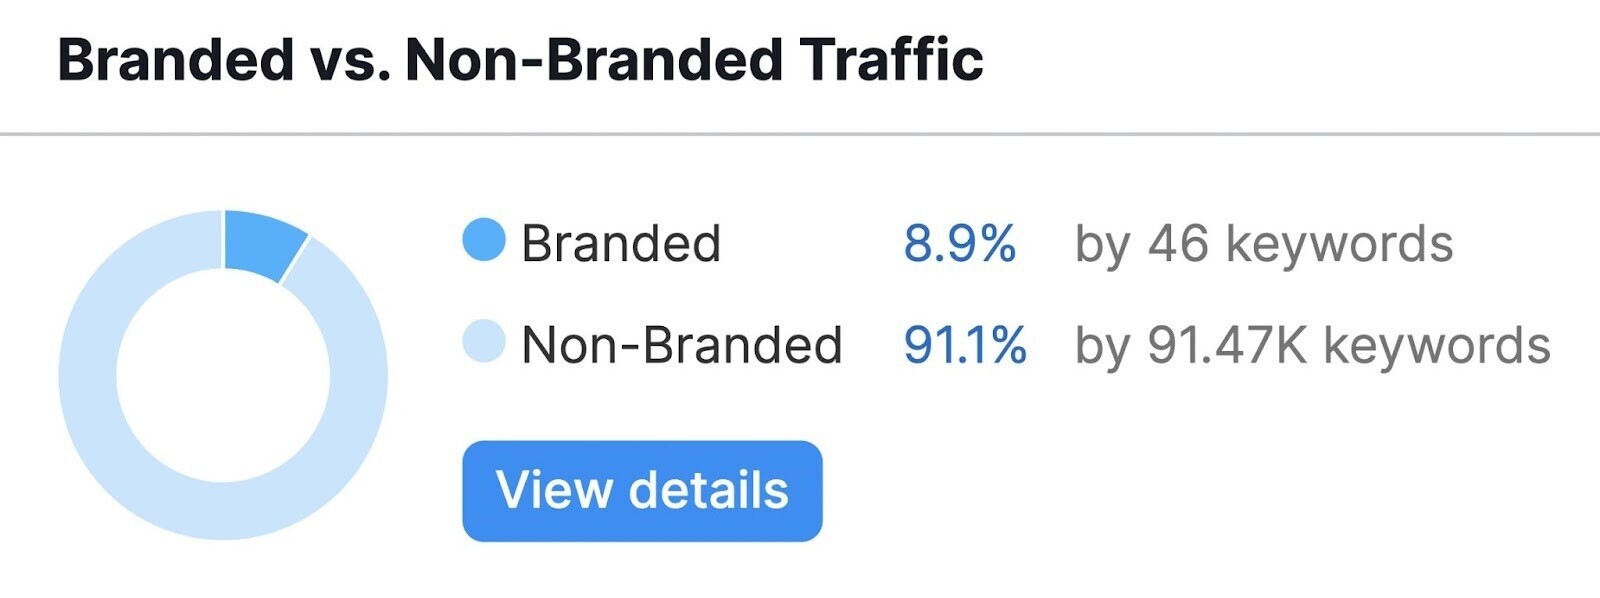 branded vs non-branded traffic